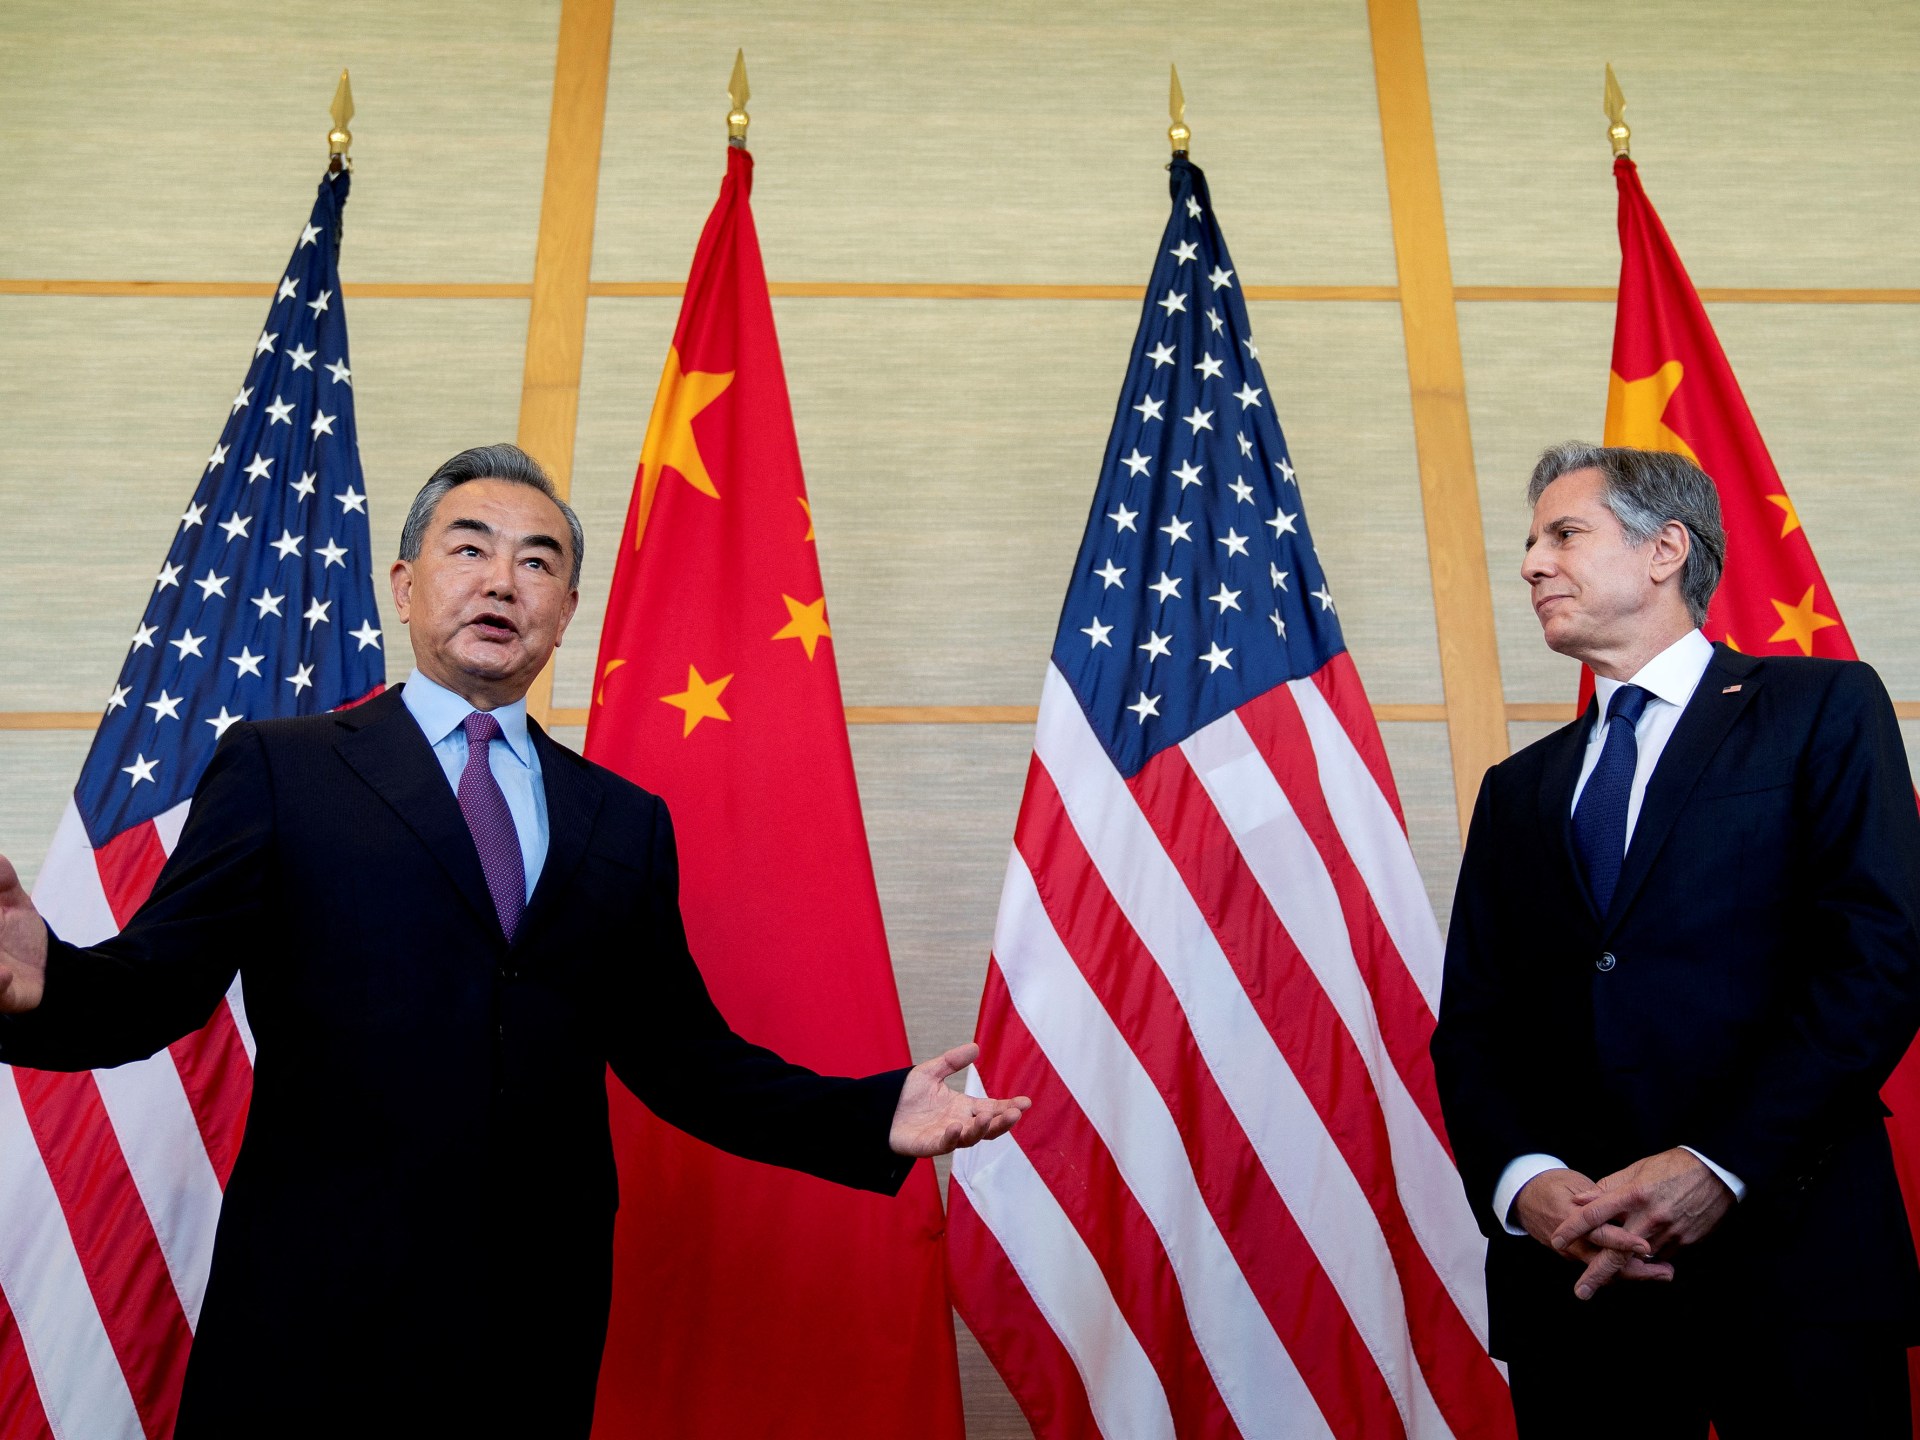 Blinken meets China’s Wang Yi, warns against helping Russia – Al Jazeera English